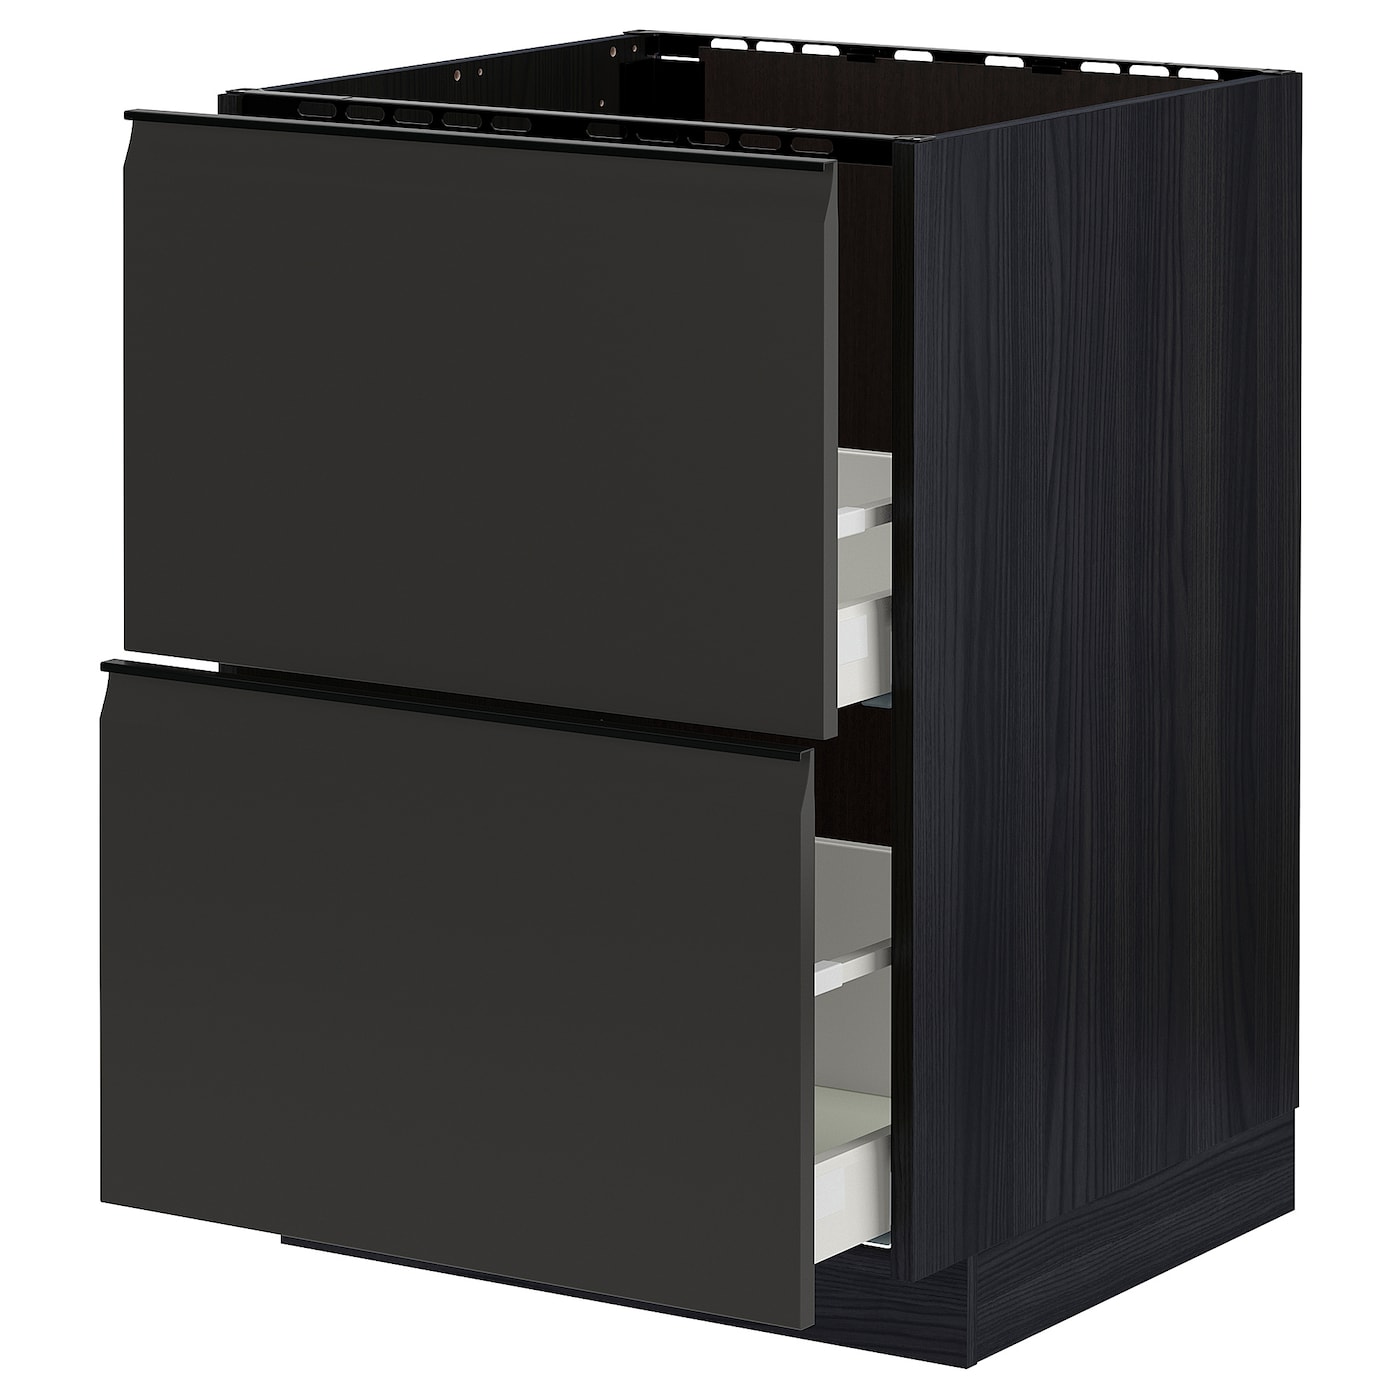 Напольный кухонный шкаф  - IKEA METOD MAXIMERA, 88x61,6x60см, черный, МЕТОД МАКСИМЕРА ИКЕА